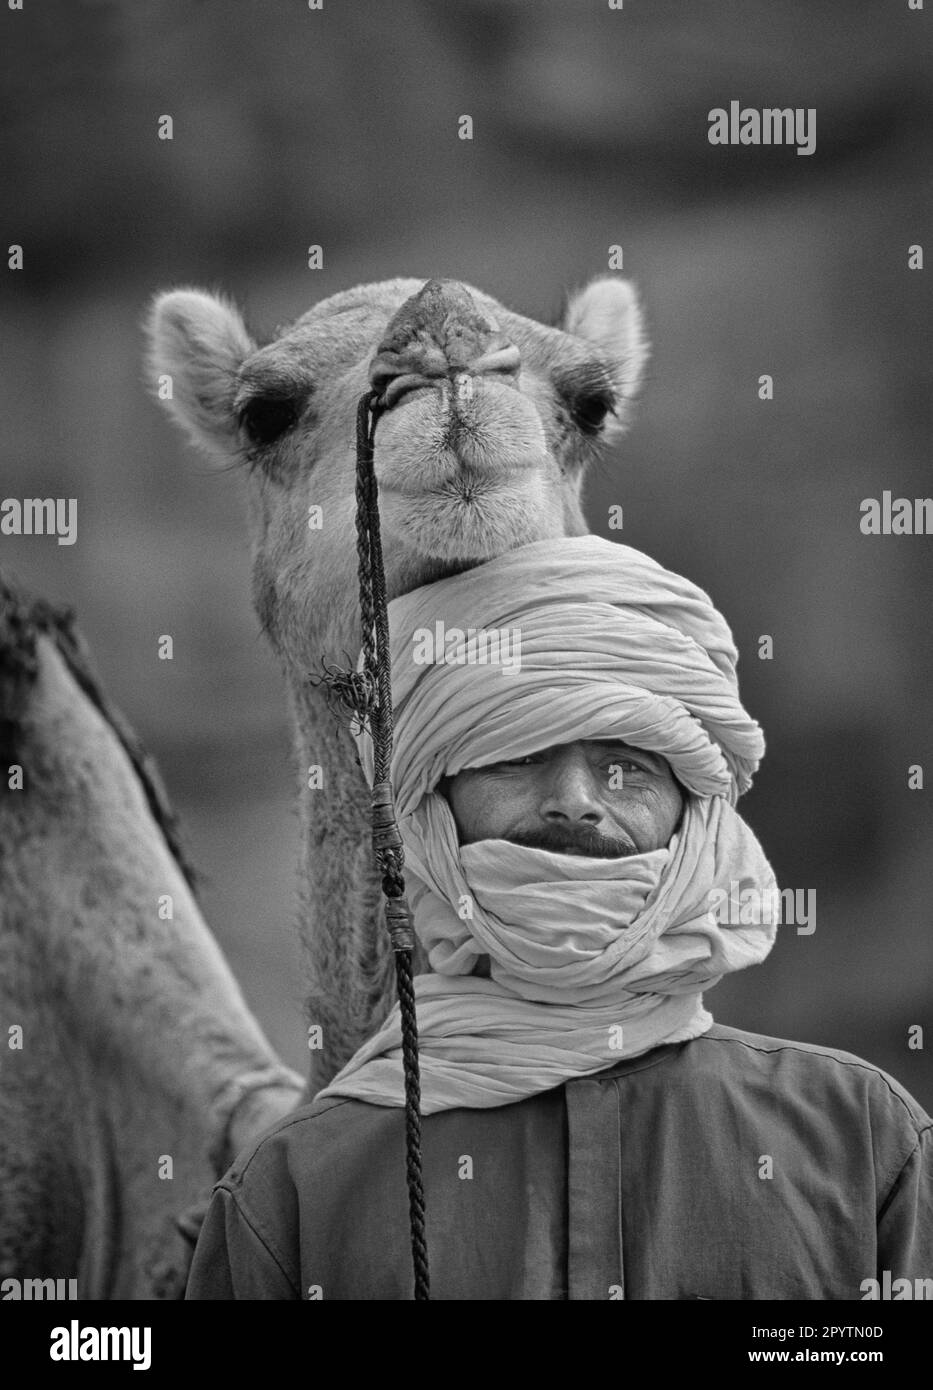 Algeria, vicino a Djanet. Deserto del Sahara. Uomo della tribù Tuareg e cammello. Bianco e nero. Foto Stock